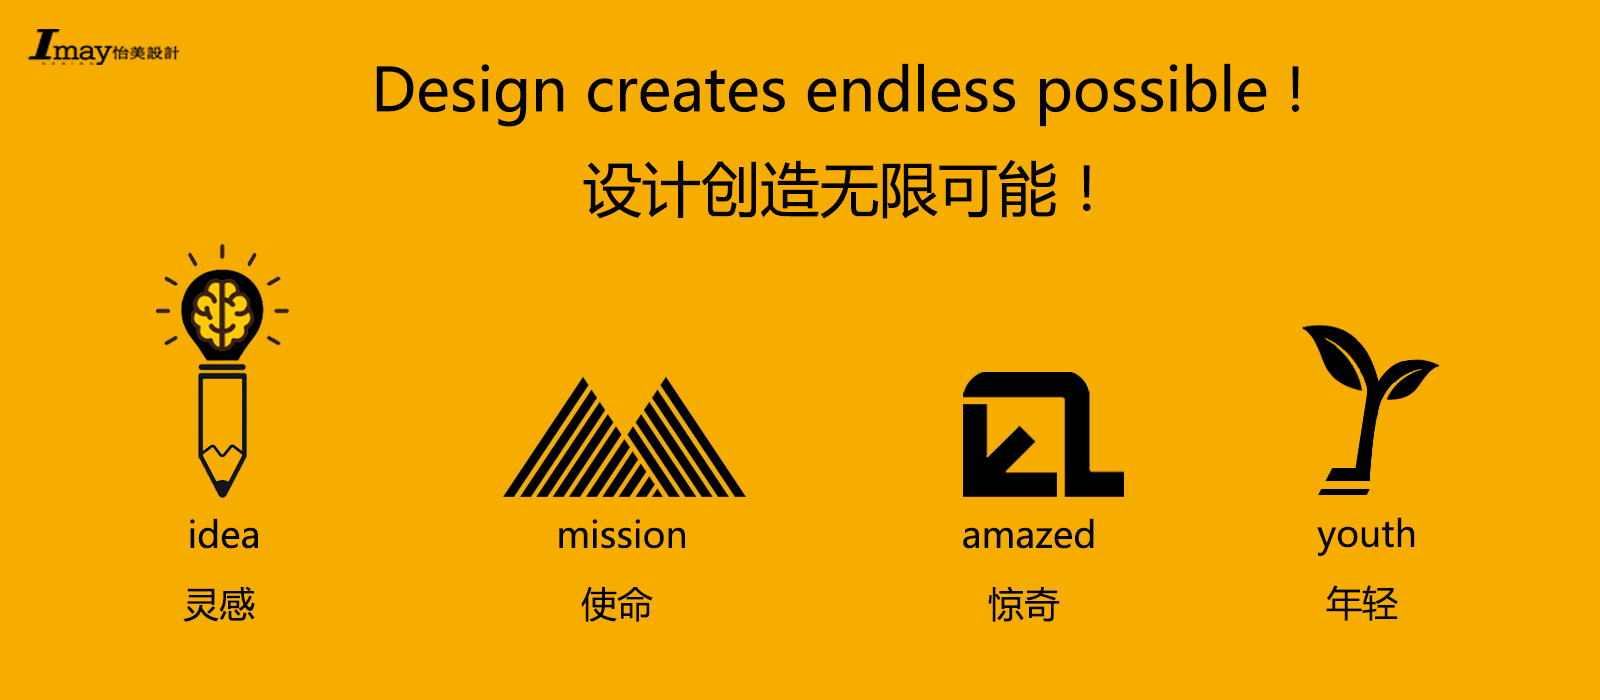 深圳产品设计外观设计结构设计公司;怡美工业设计